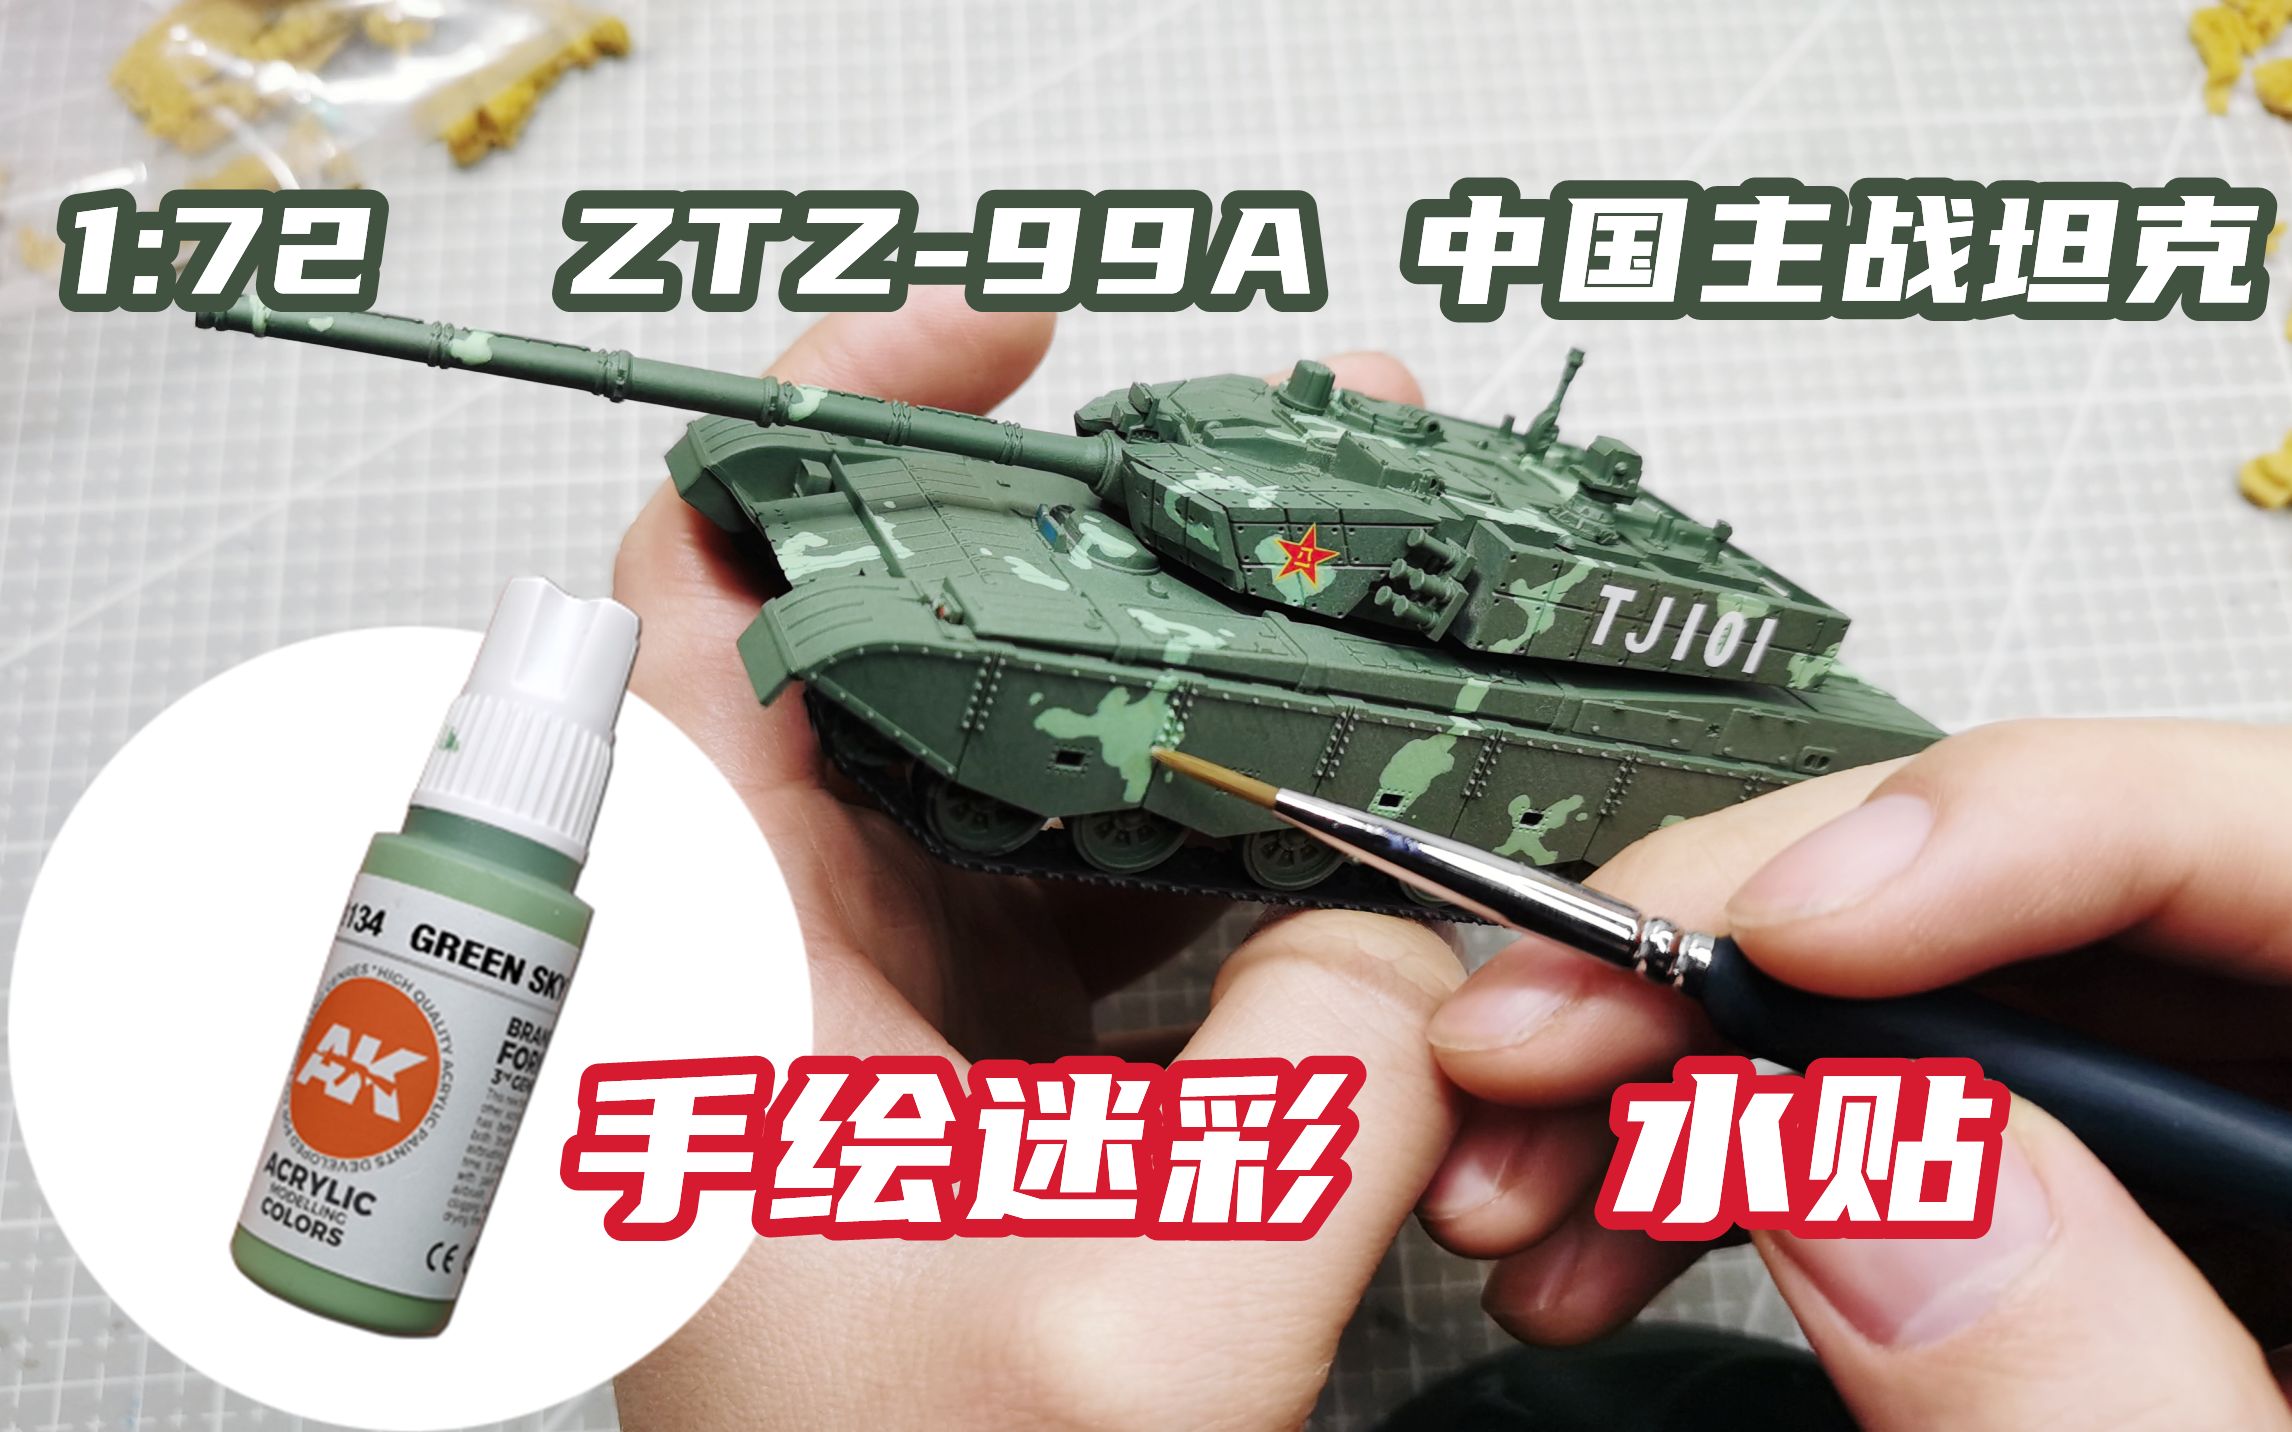 水性漆手绘坦克迷彩以及贴水贴【中国ZTZ-99A 1：72主战坦克制作01】-哔 